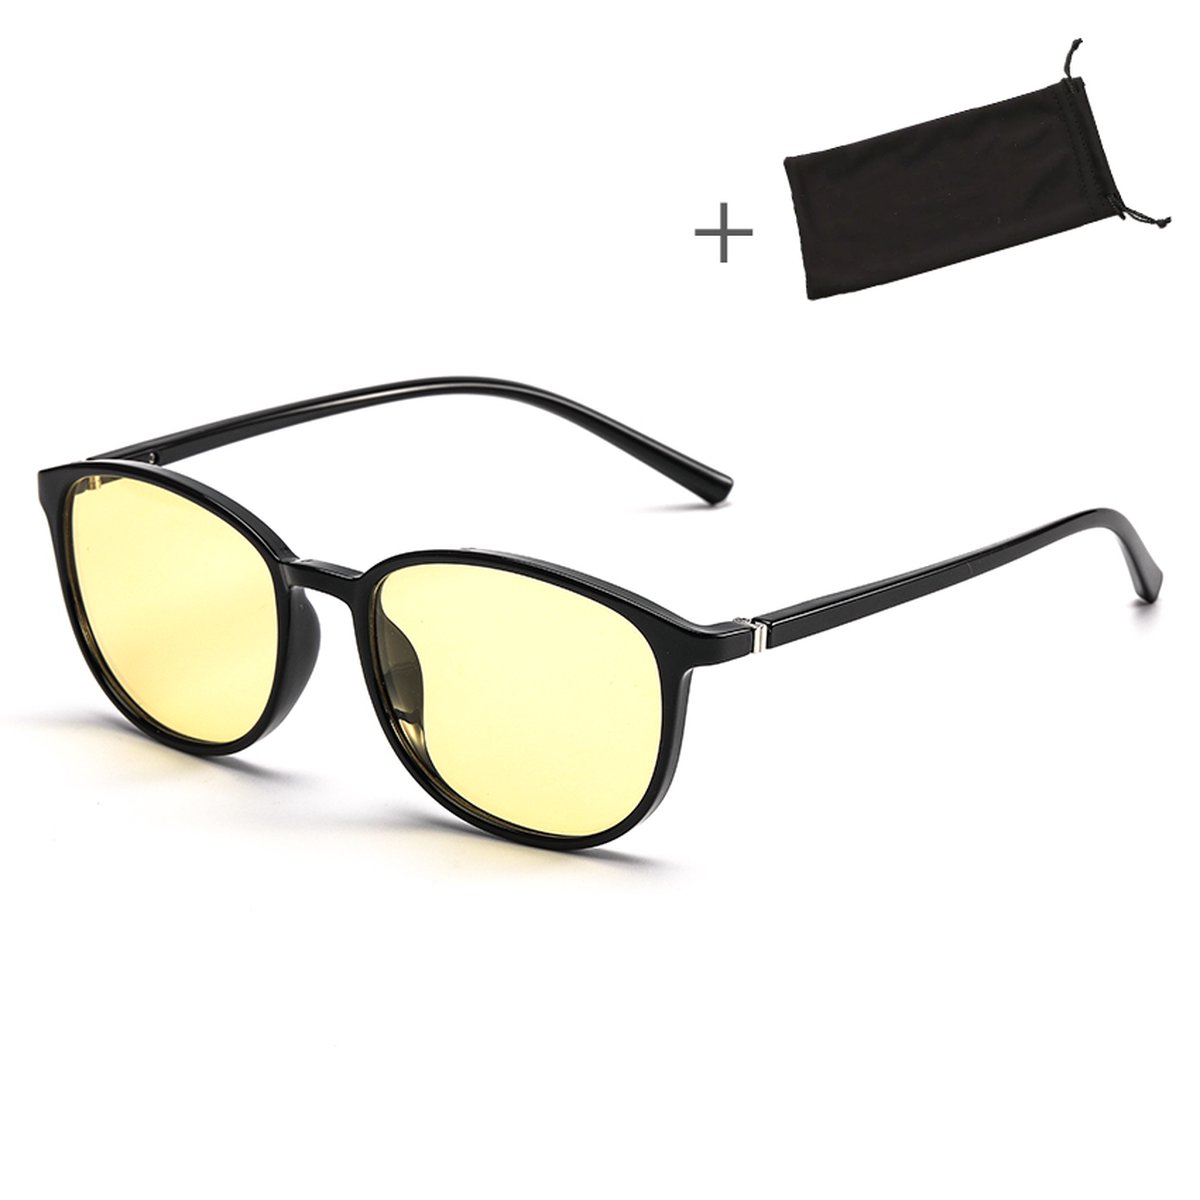 Zentono Luxe Nachtbril - Nachtvisie voor Auto en Computer - De Ultieme Oplossing voor Nachtblindheid - Luxueus Design - Beschermt tegen Verblindend Autolicht - Unisex - Elegant Zwart Design